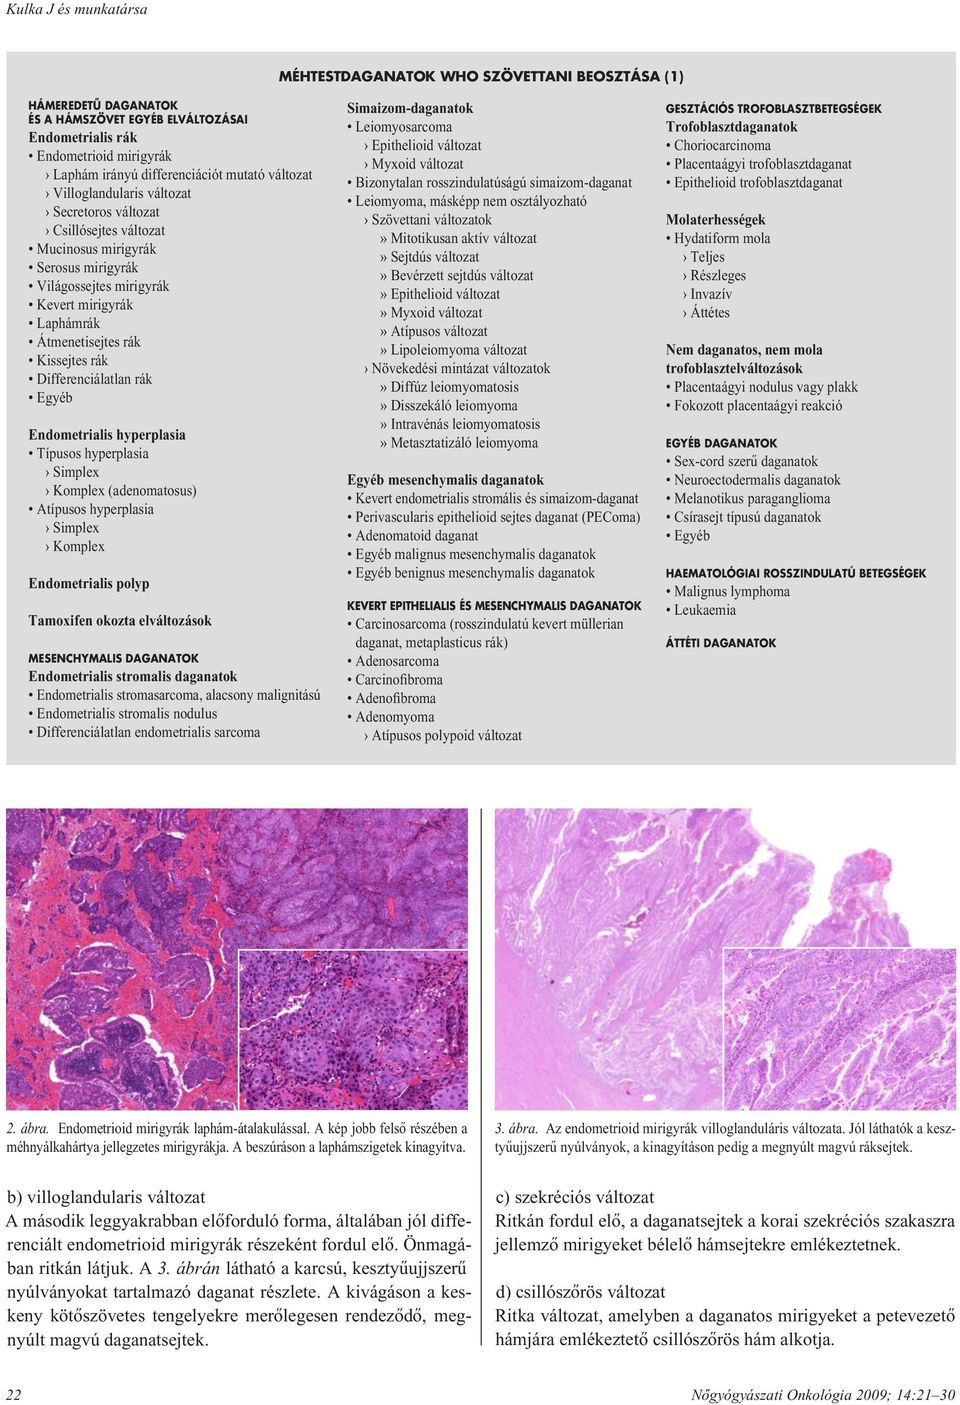 Gasztrointesztinális sztróma tumor (GIST) | budapestfoglyai.hu